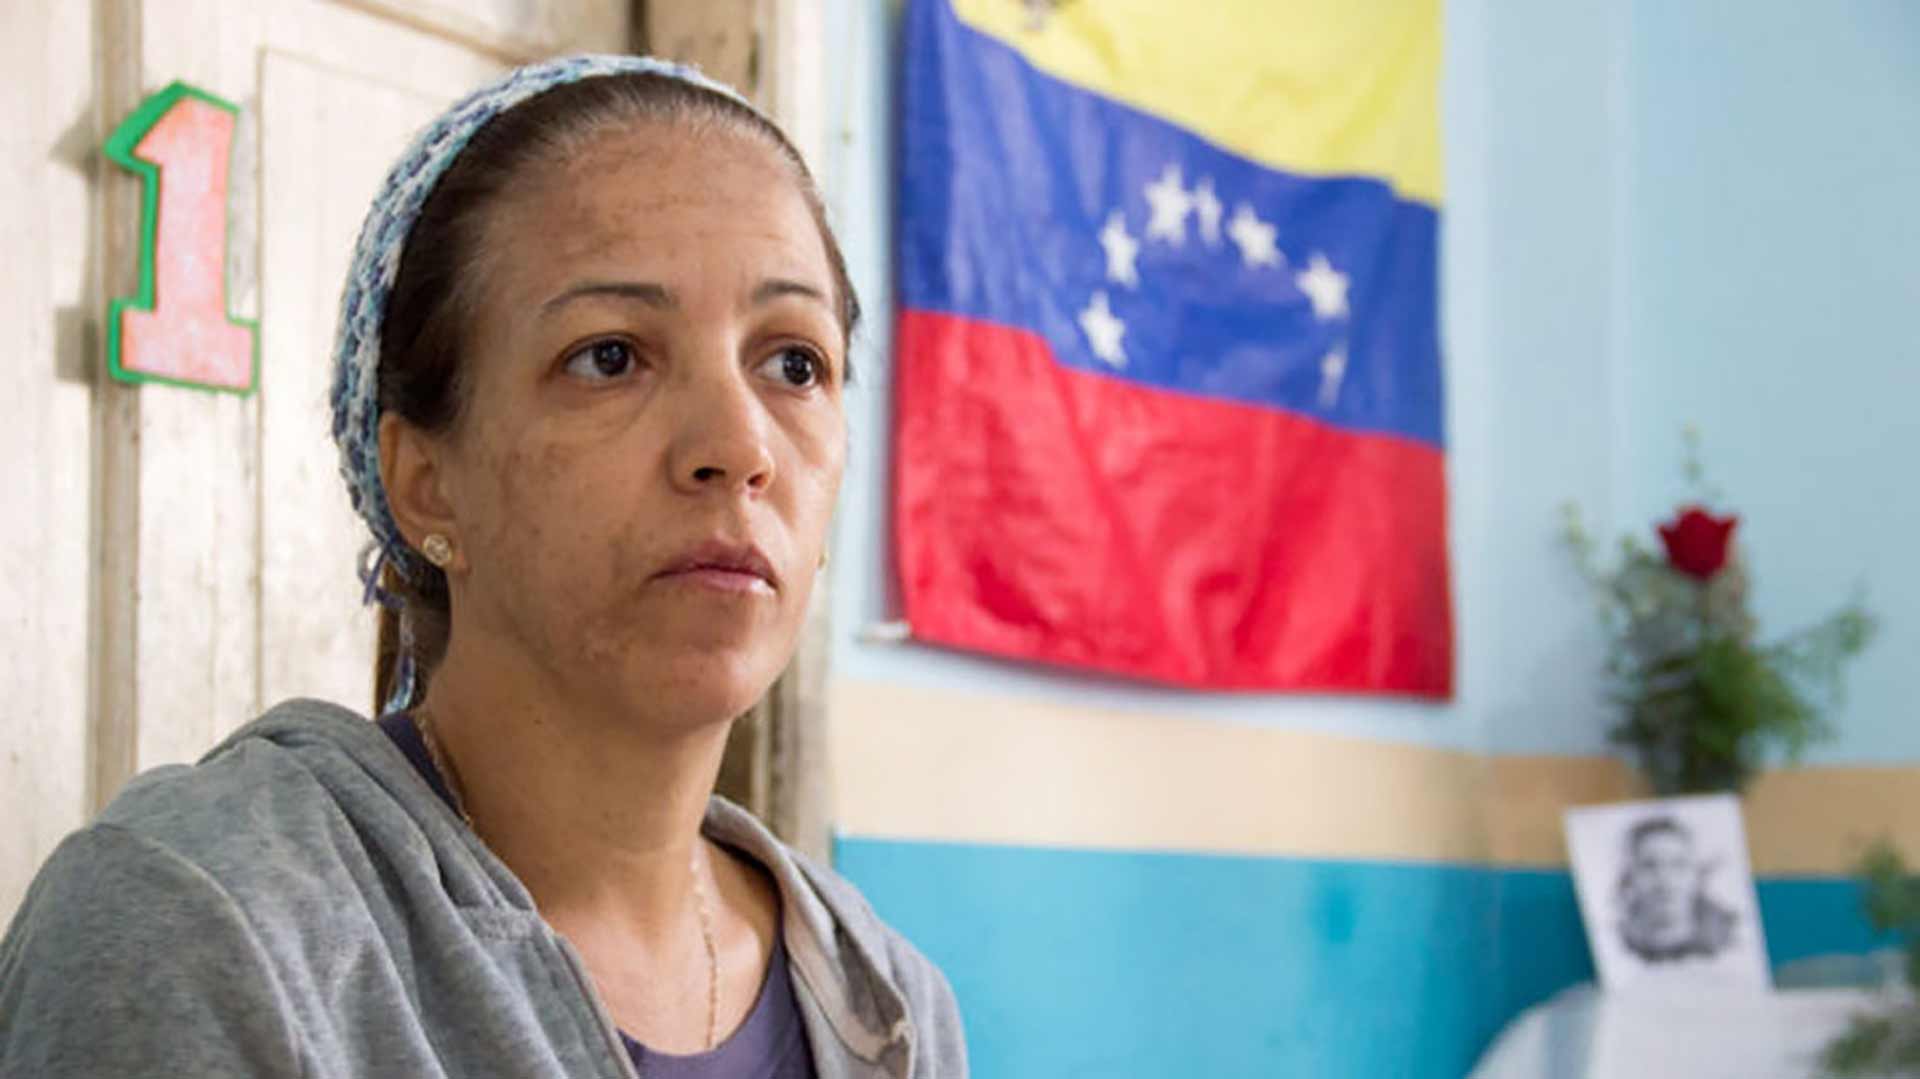 La tía de Alixon Dos Santos, asesinado en Venezuela: “Las FAES mataron a mi sobrino, no a un perro ni a un malandro”